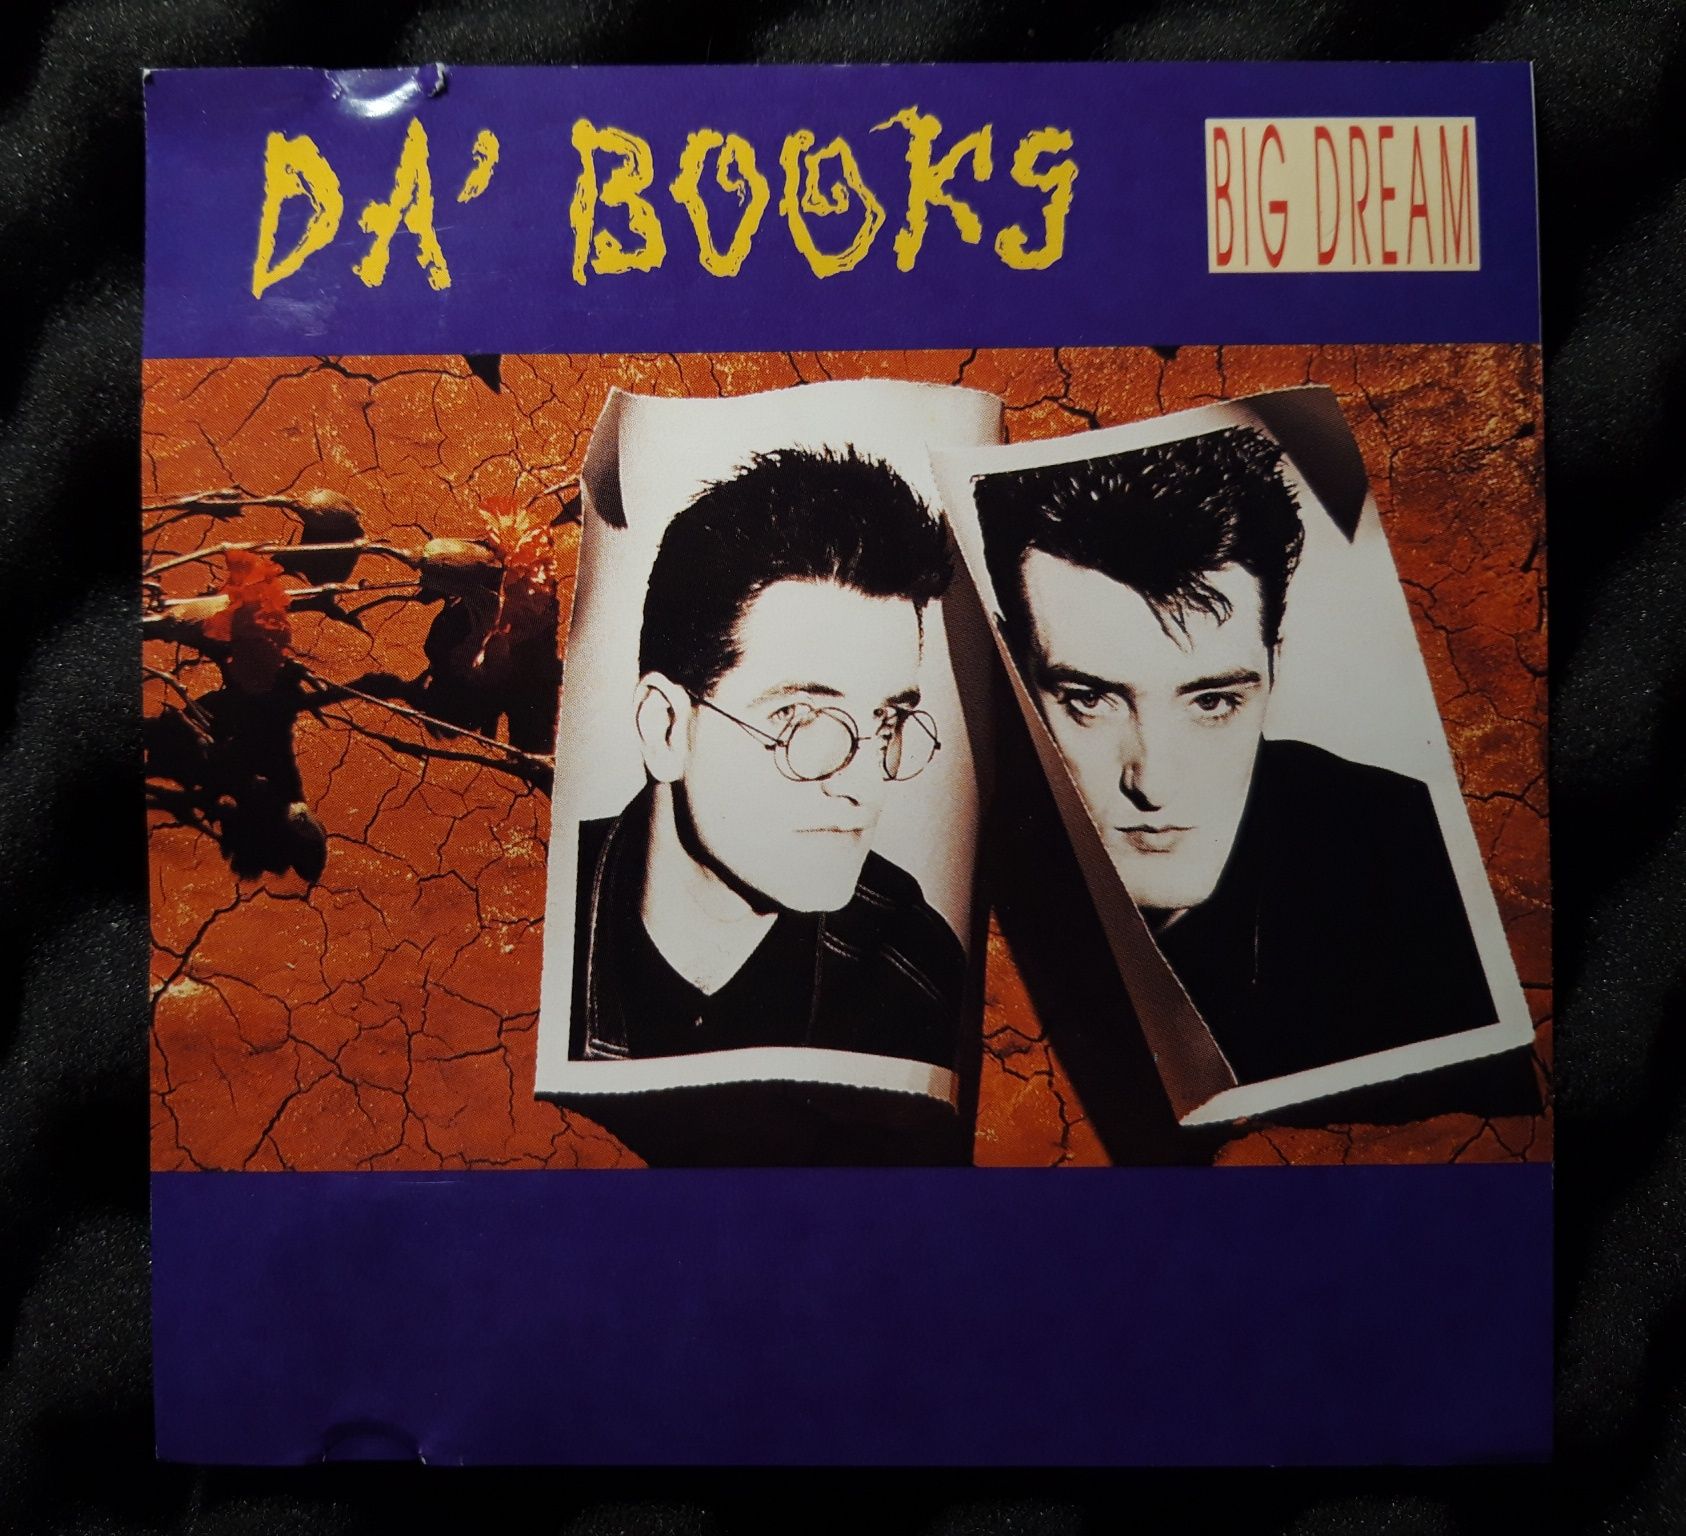 Da Books – Big Dream (CD, 1989)